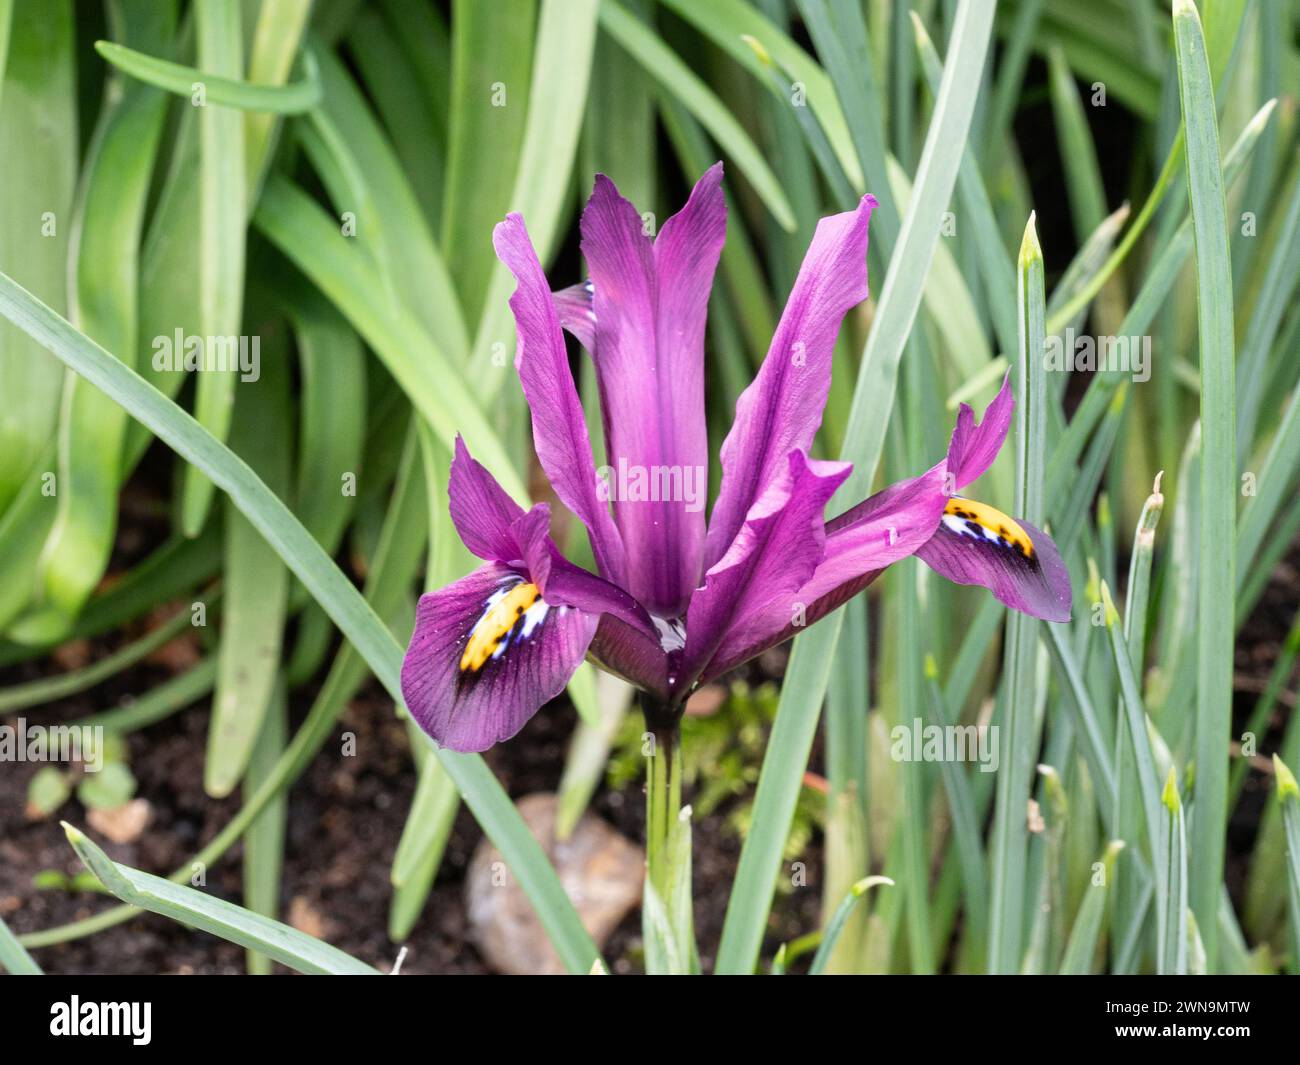 A single deep purple flower of Iris reticulata JS Dijt Stock Photo